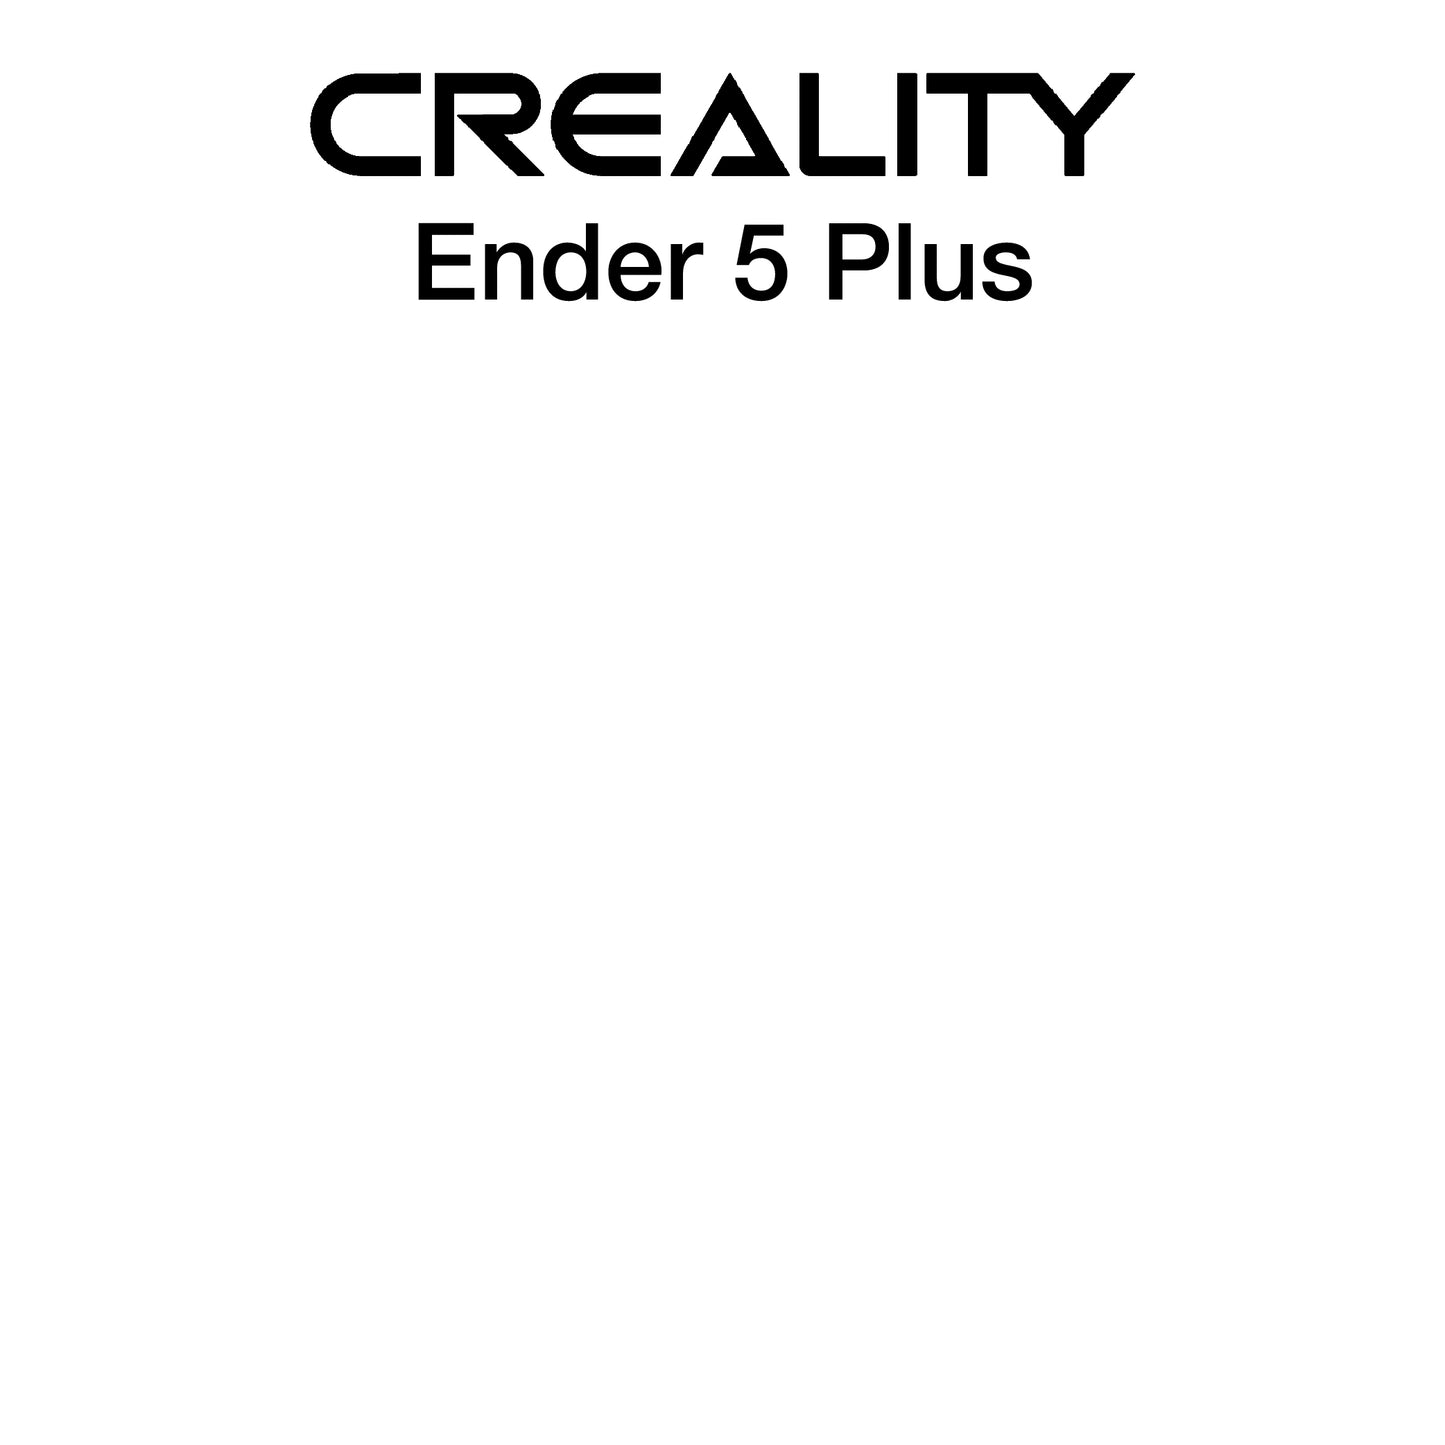 Kit with PEX - Creality Ender 5 Plus - 377 x 370